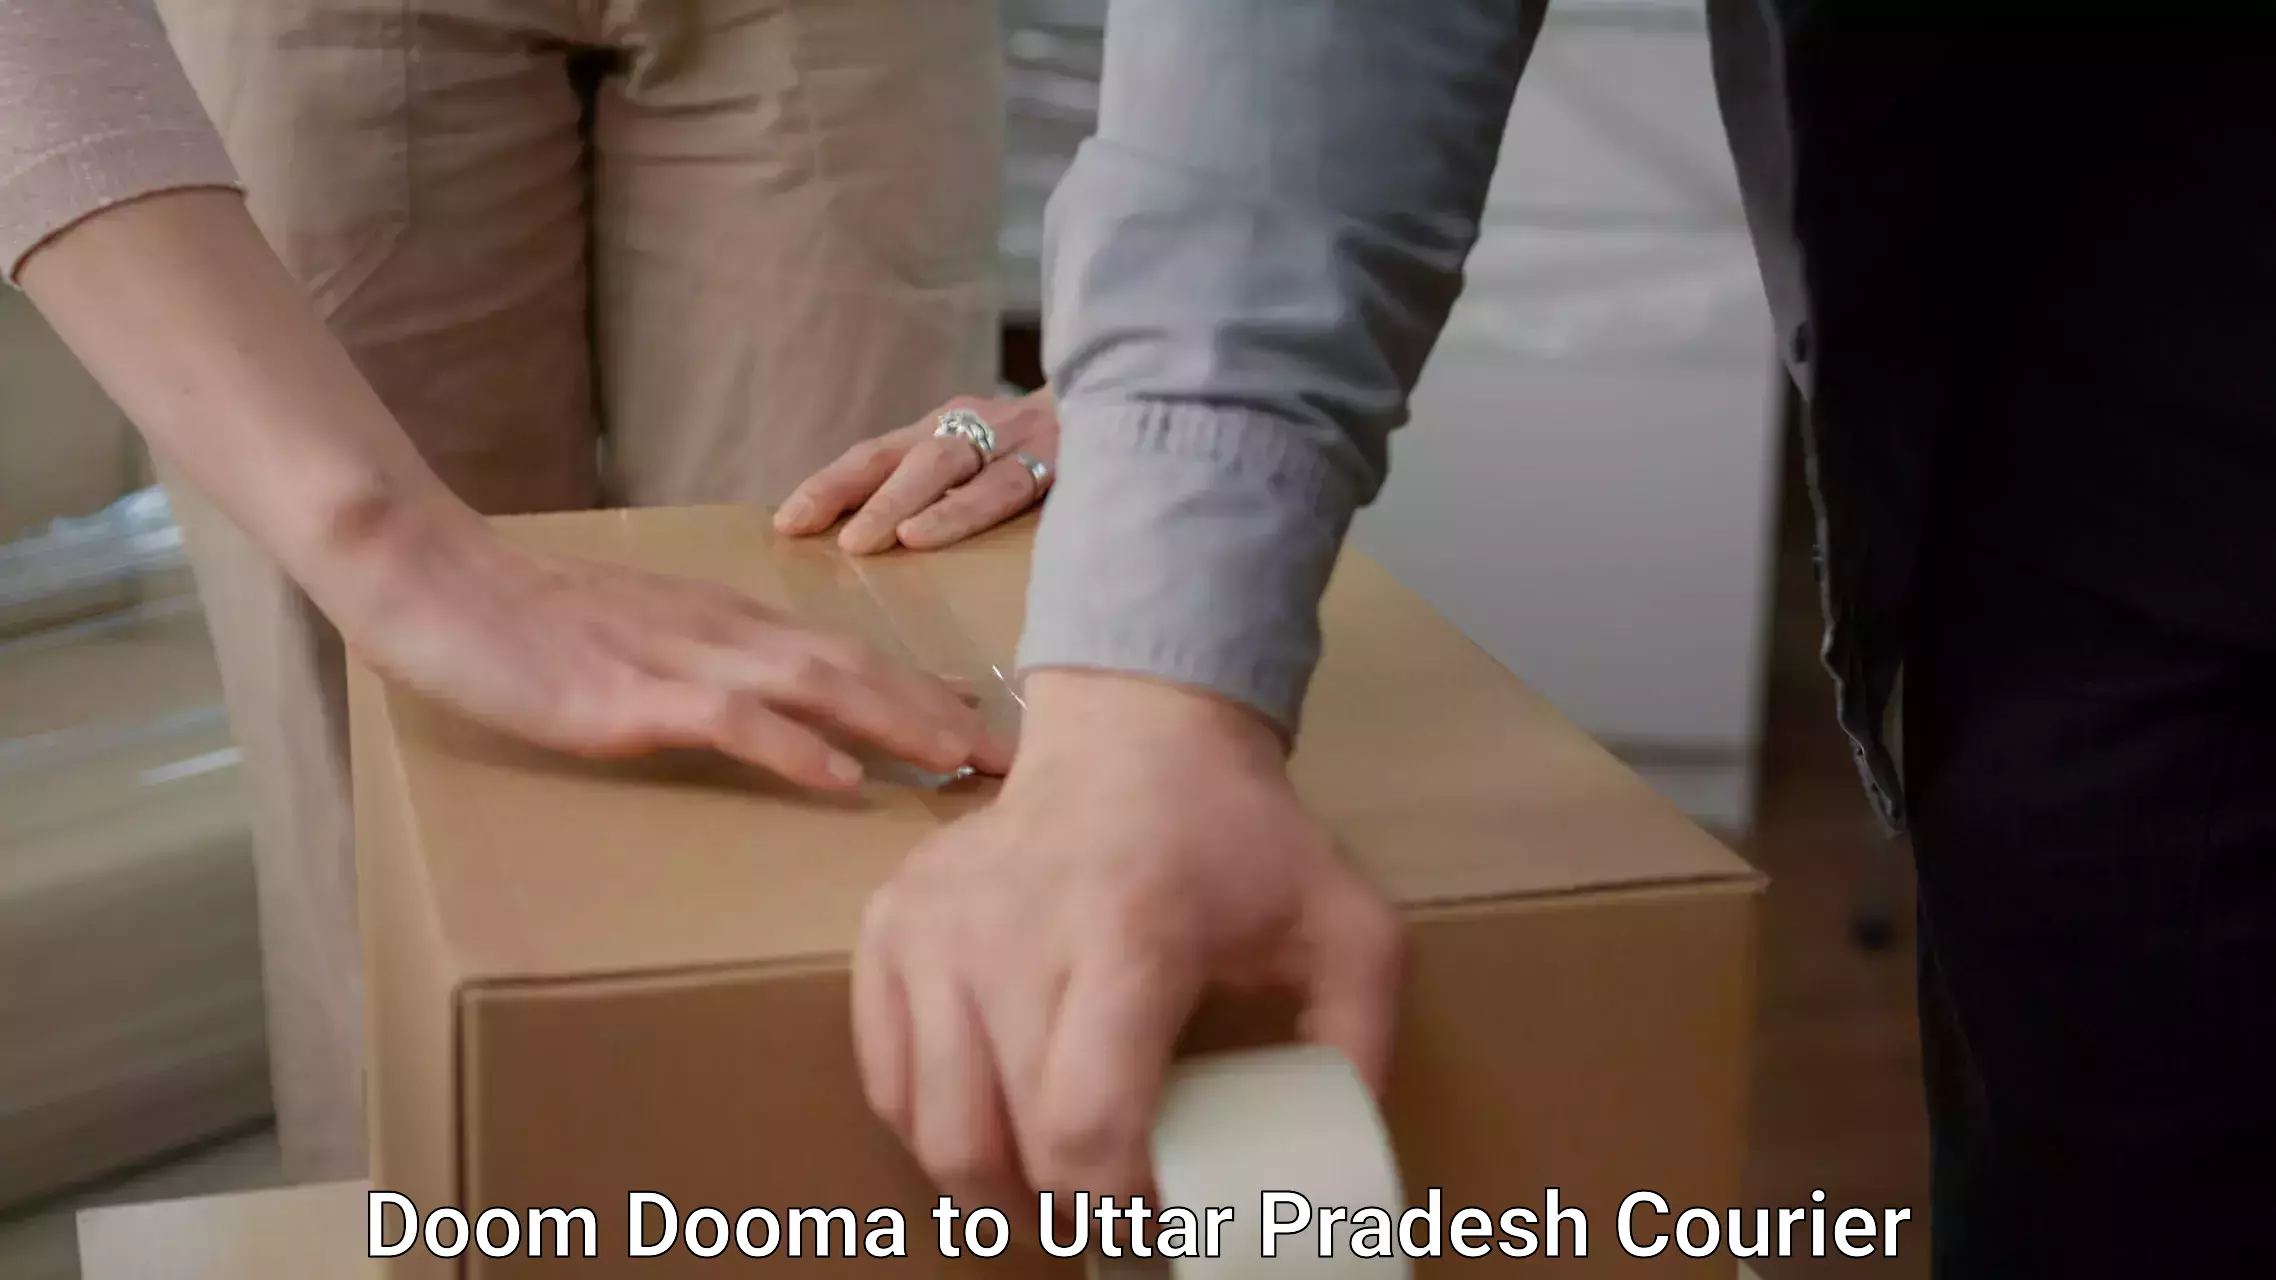 Efficient moving company Doom Dooma to Bharwari